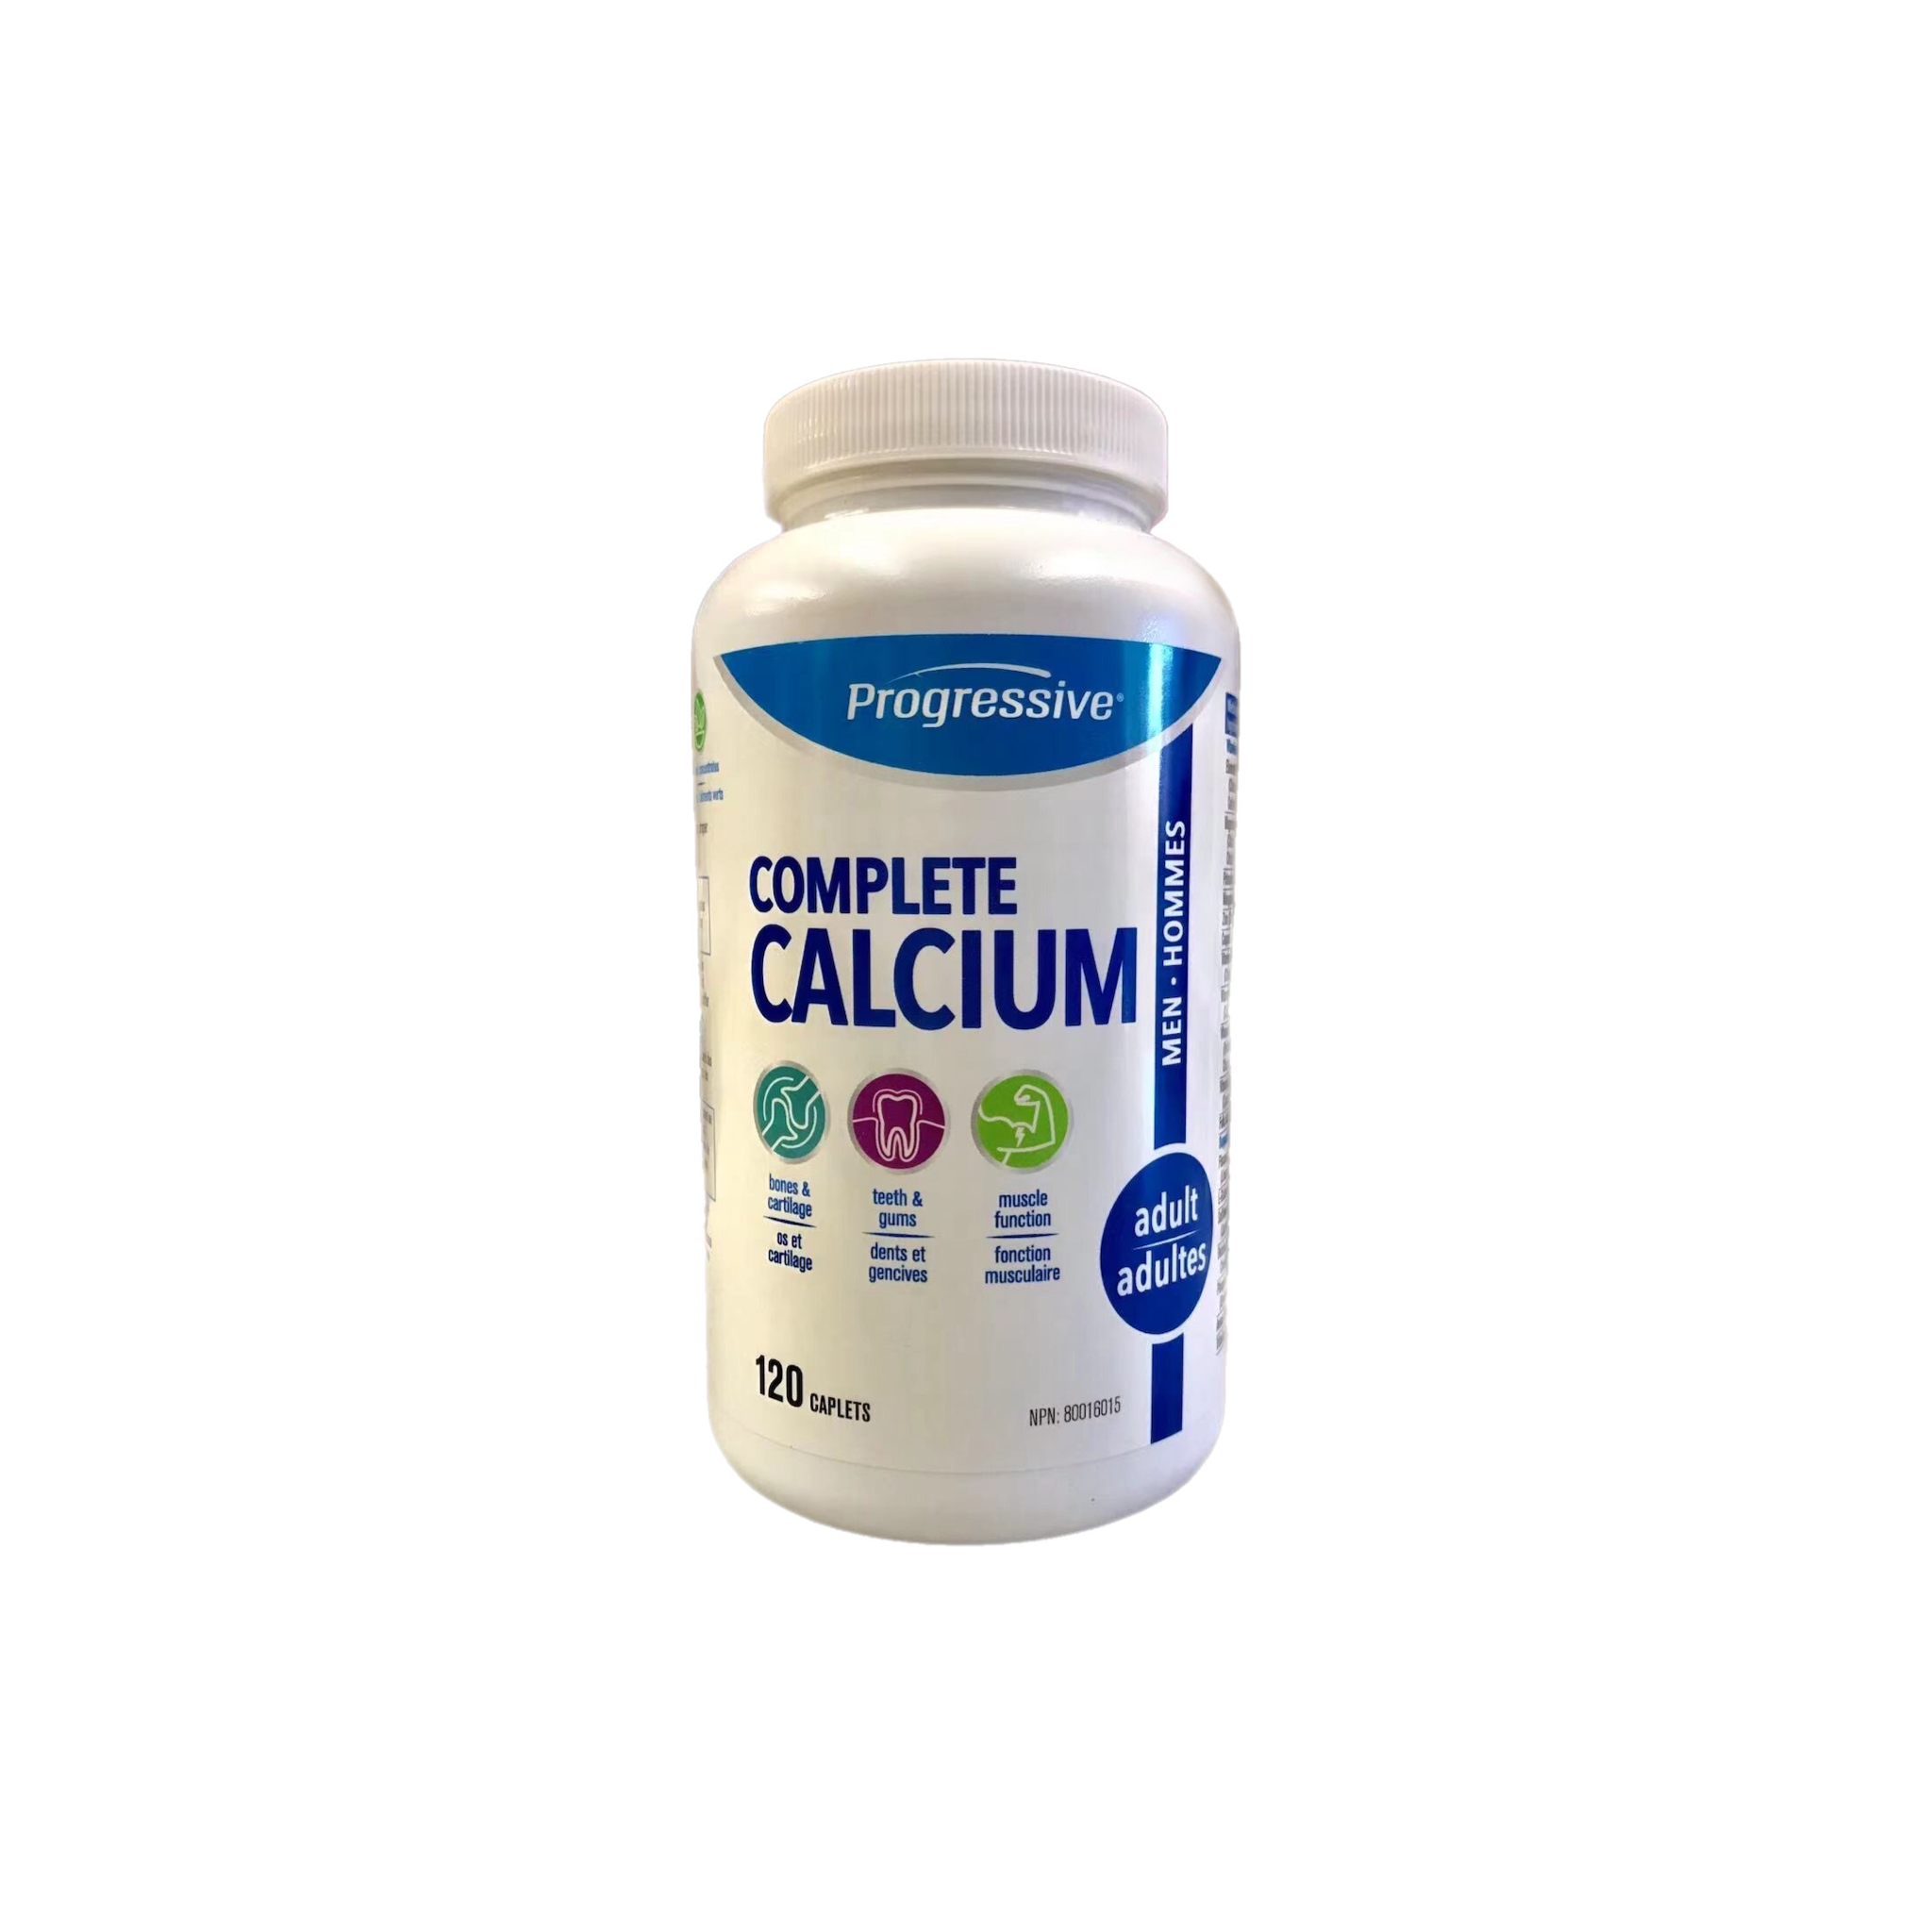 Progressive Complete Calcium For Adult Men 120 Capsules